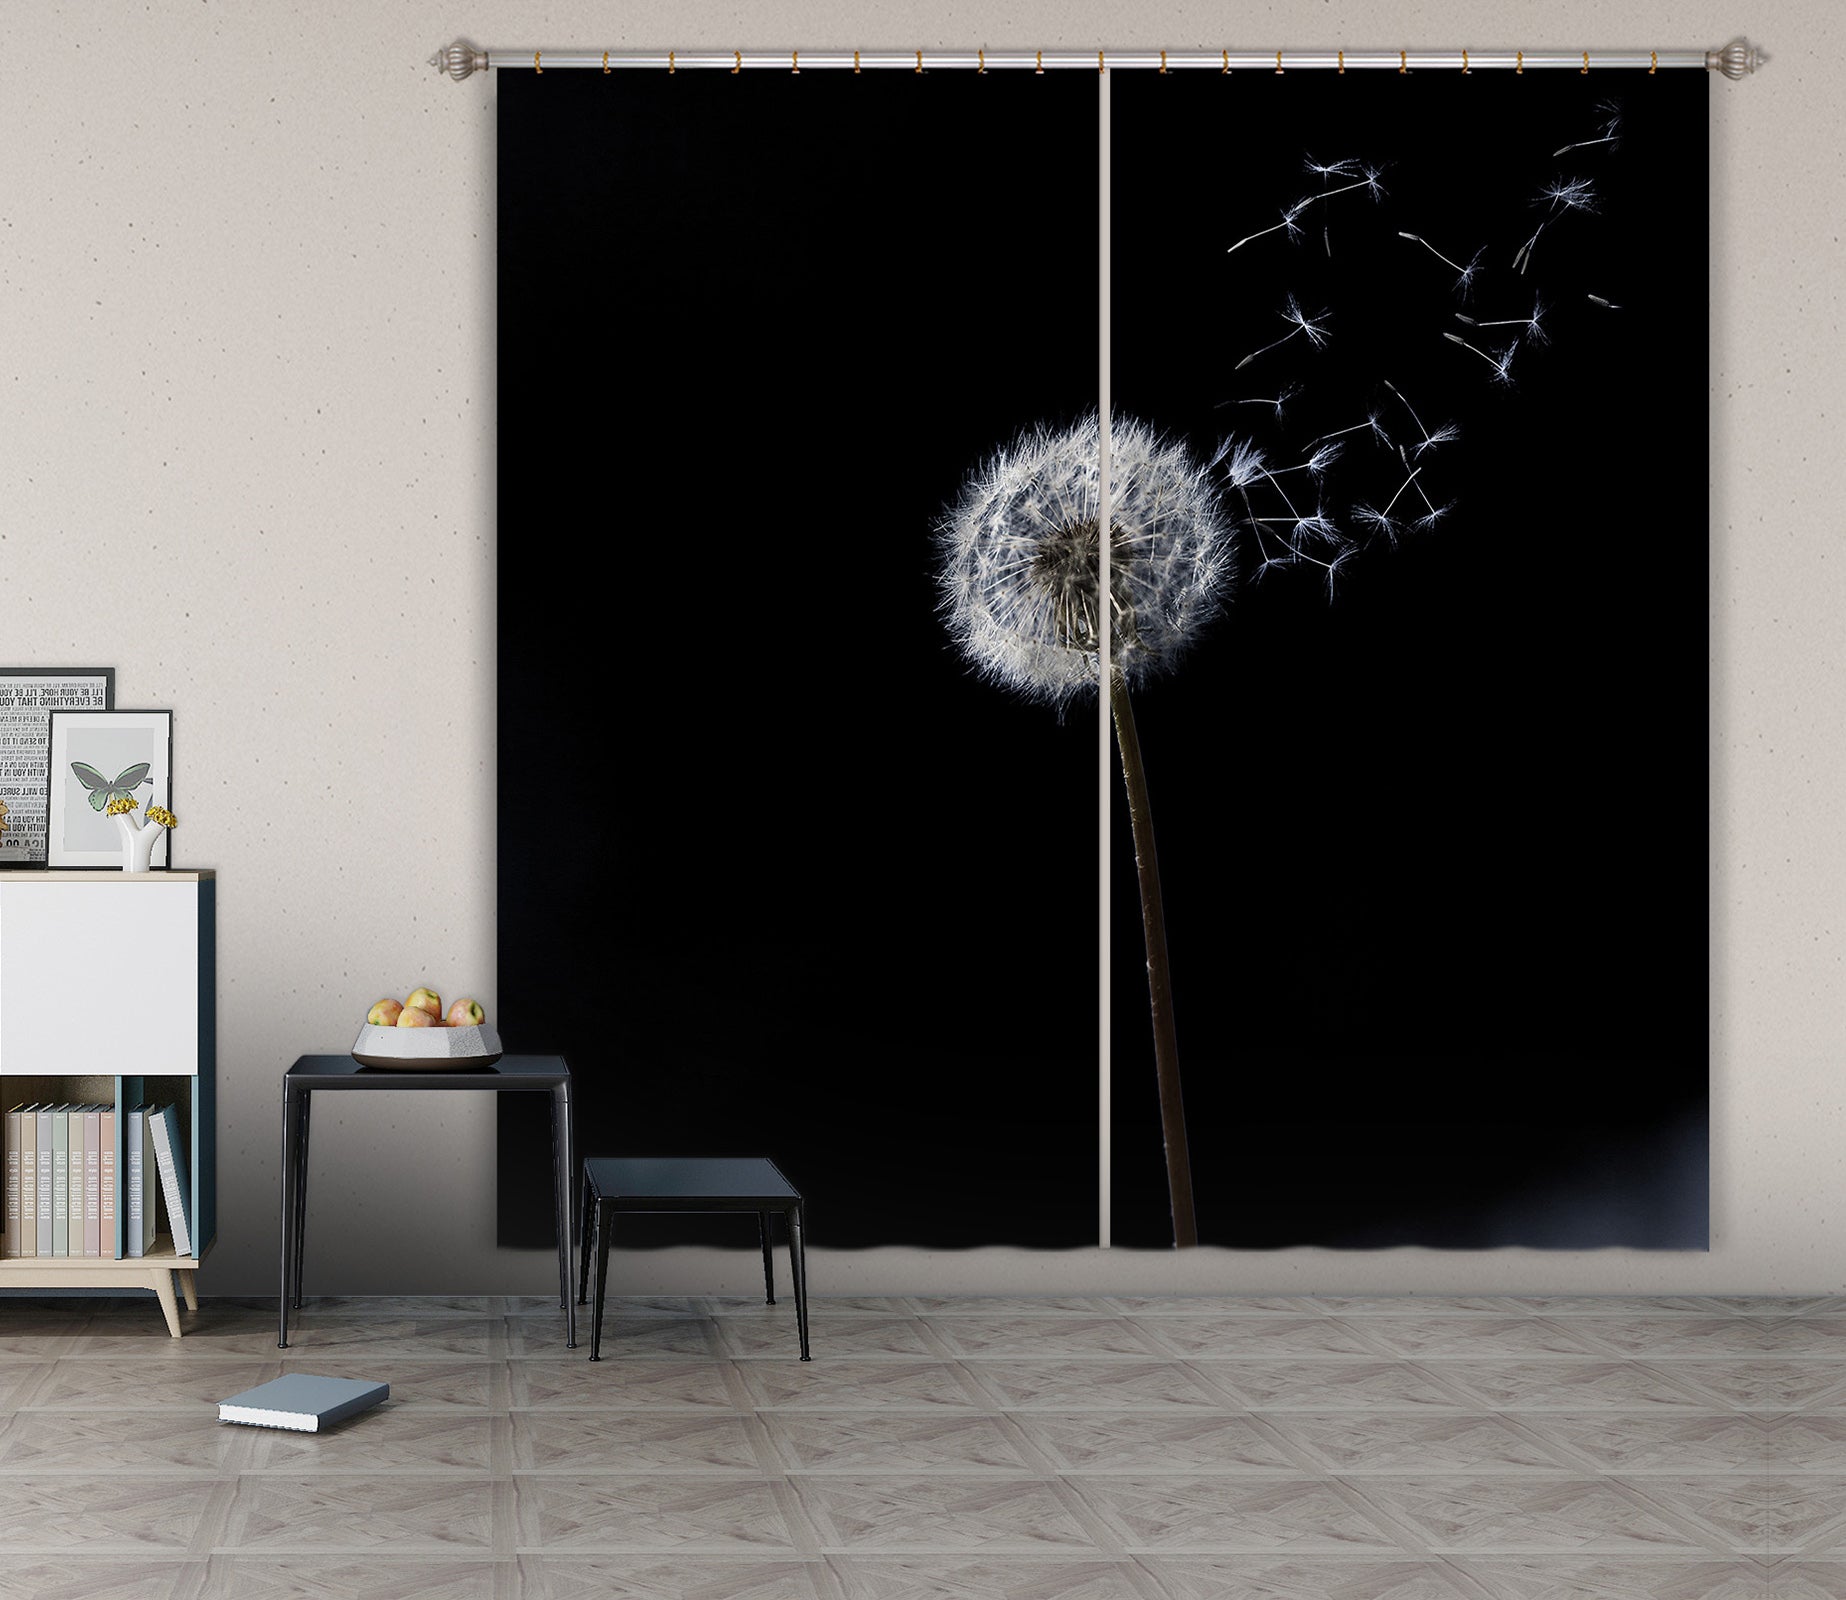 3D Dandelion 078 Marco Carmassi Curtain Curtains Drapes